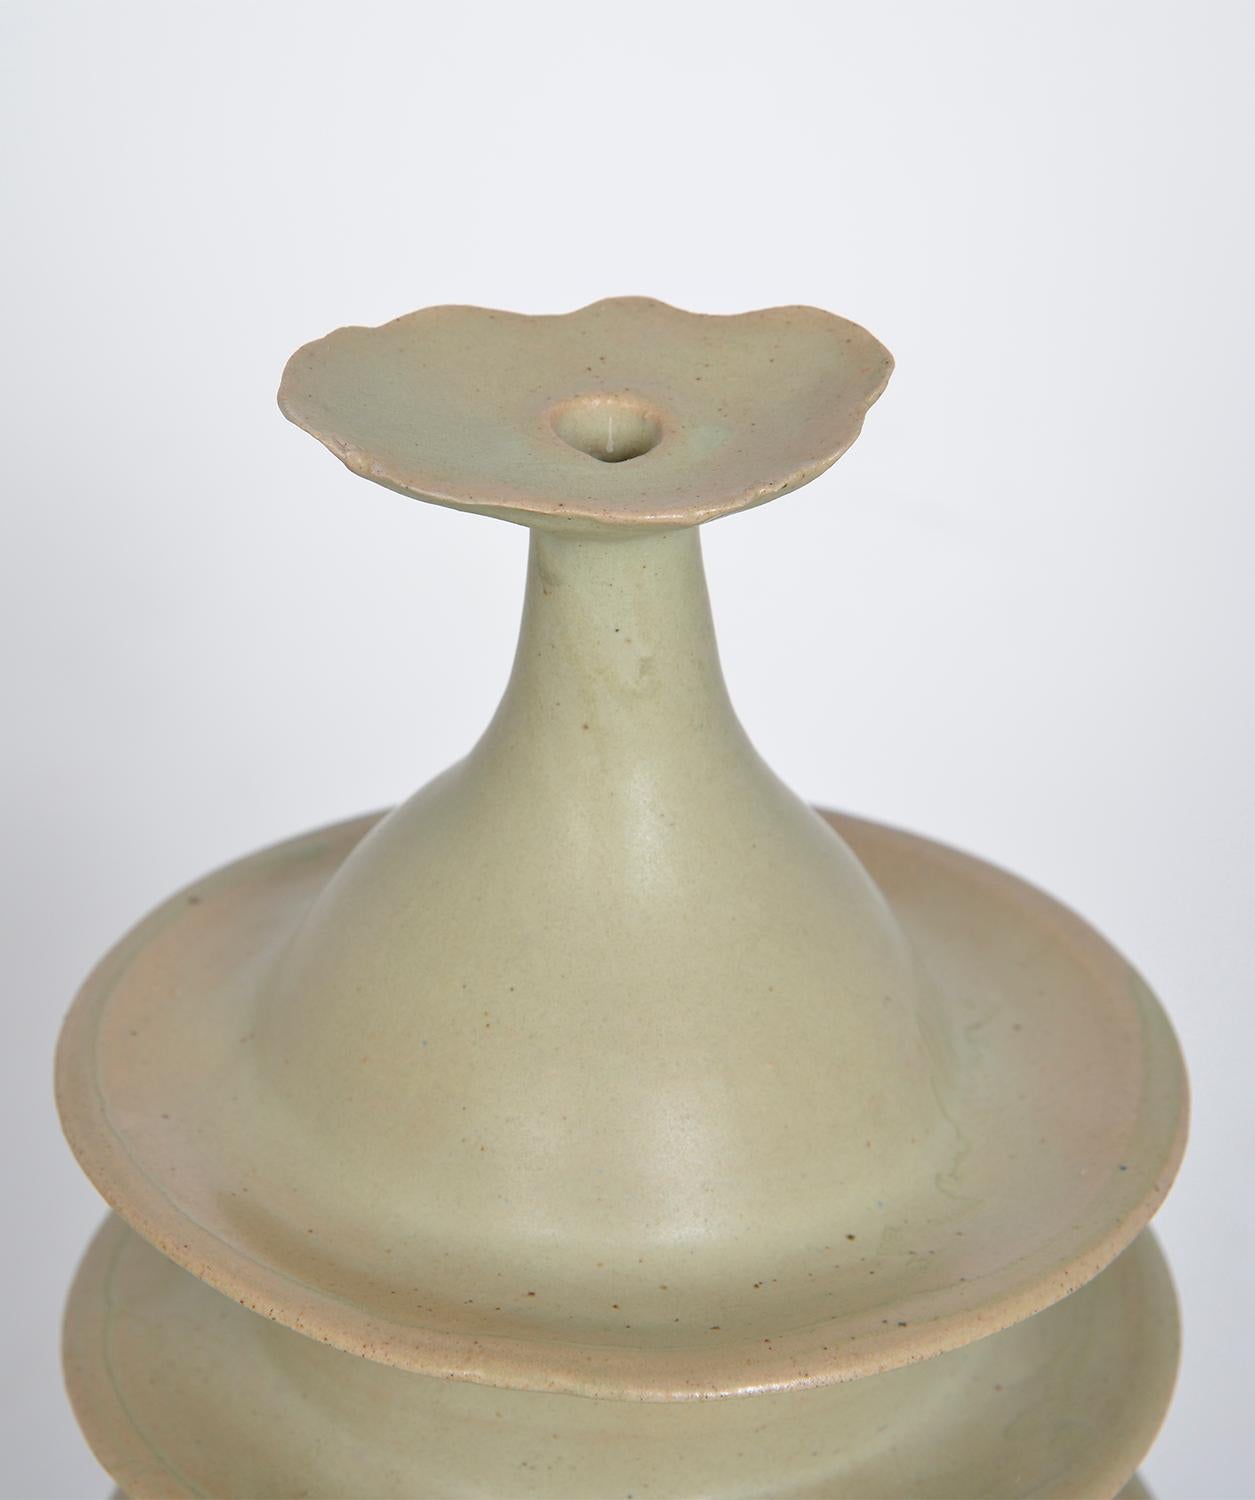 Abstrakte Studiotöpferei Steinzeug 'Pagode Pot' von Alan Ashpool, England um 1970 (Töpferwaren) im Angebot